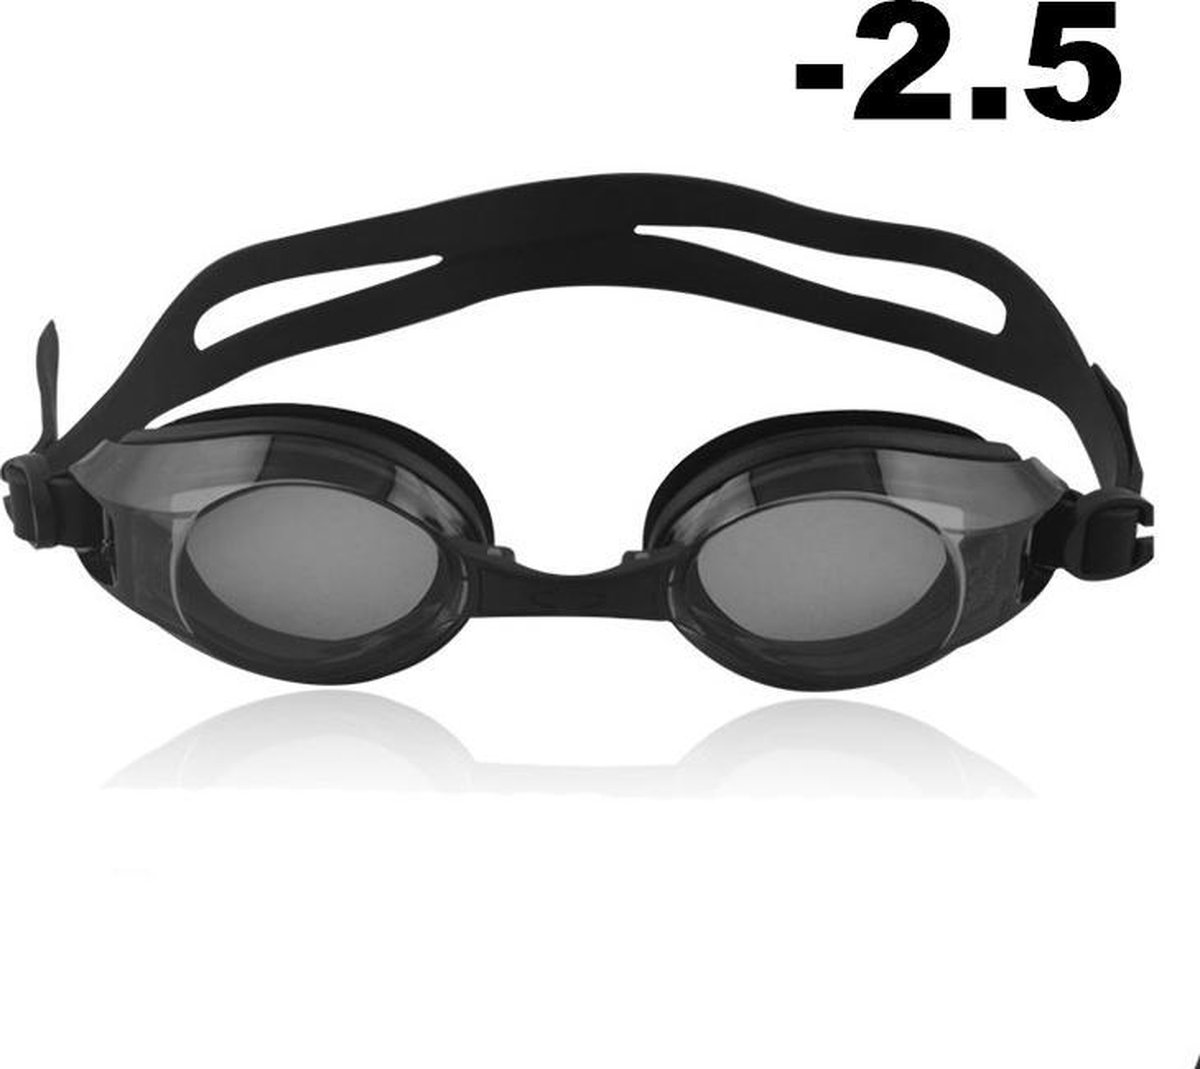 Zwembril op sterkte - myopia (-2.5)